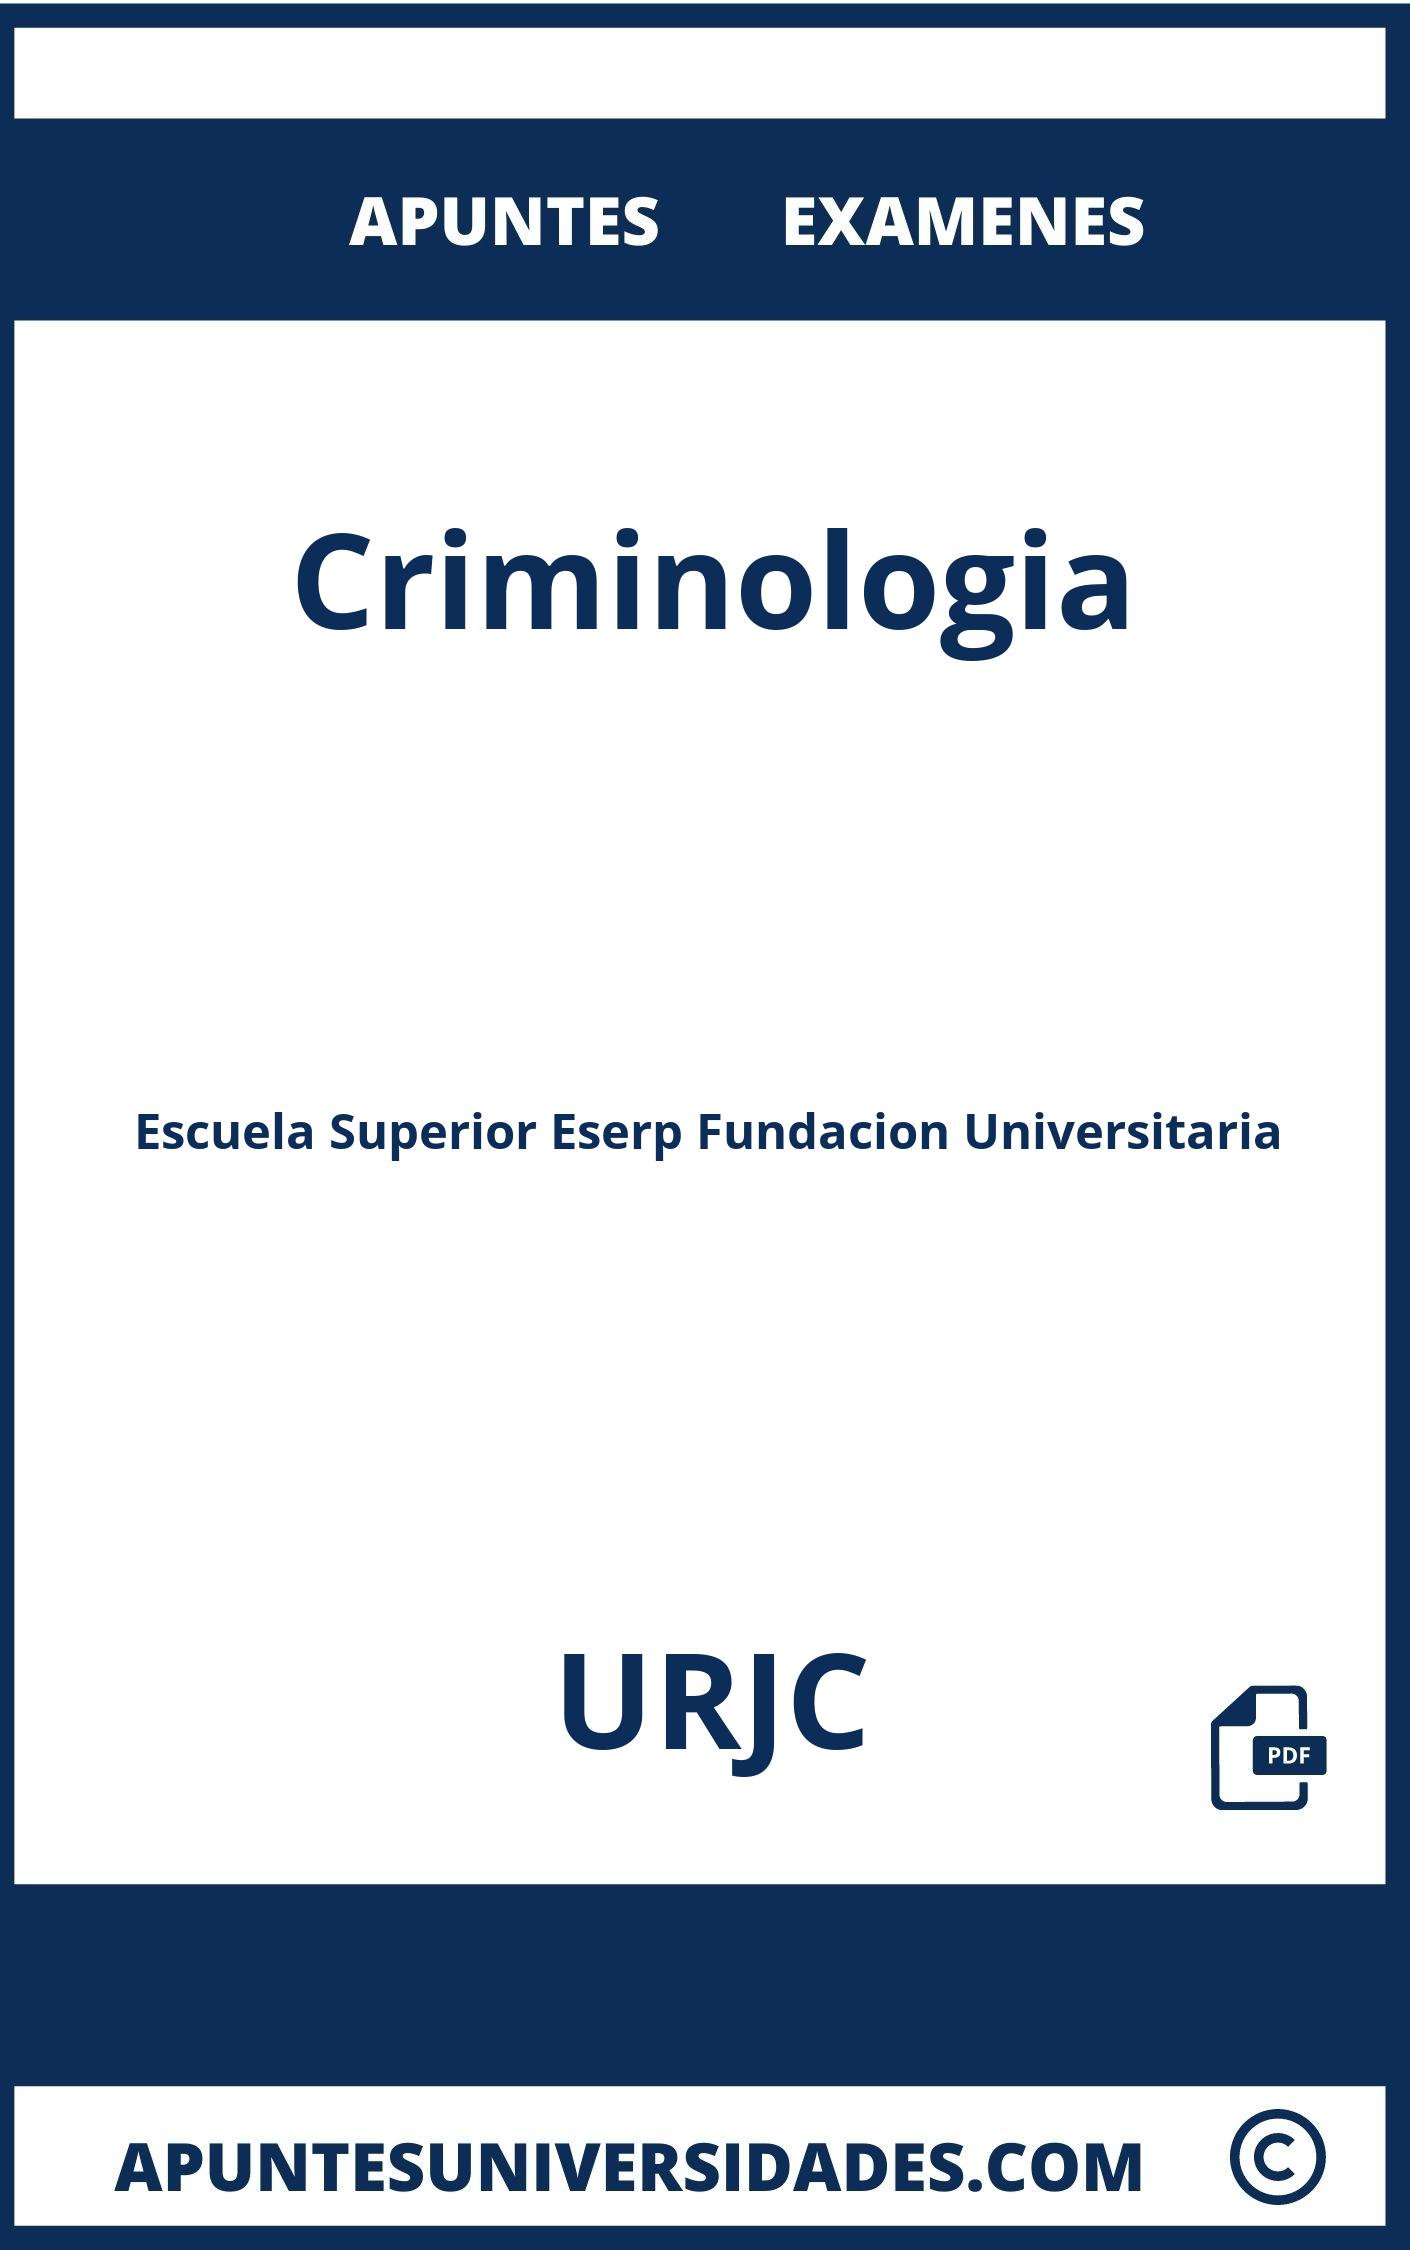 Examenes y Apuntes Criminologia URJC